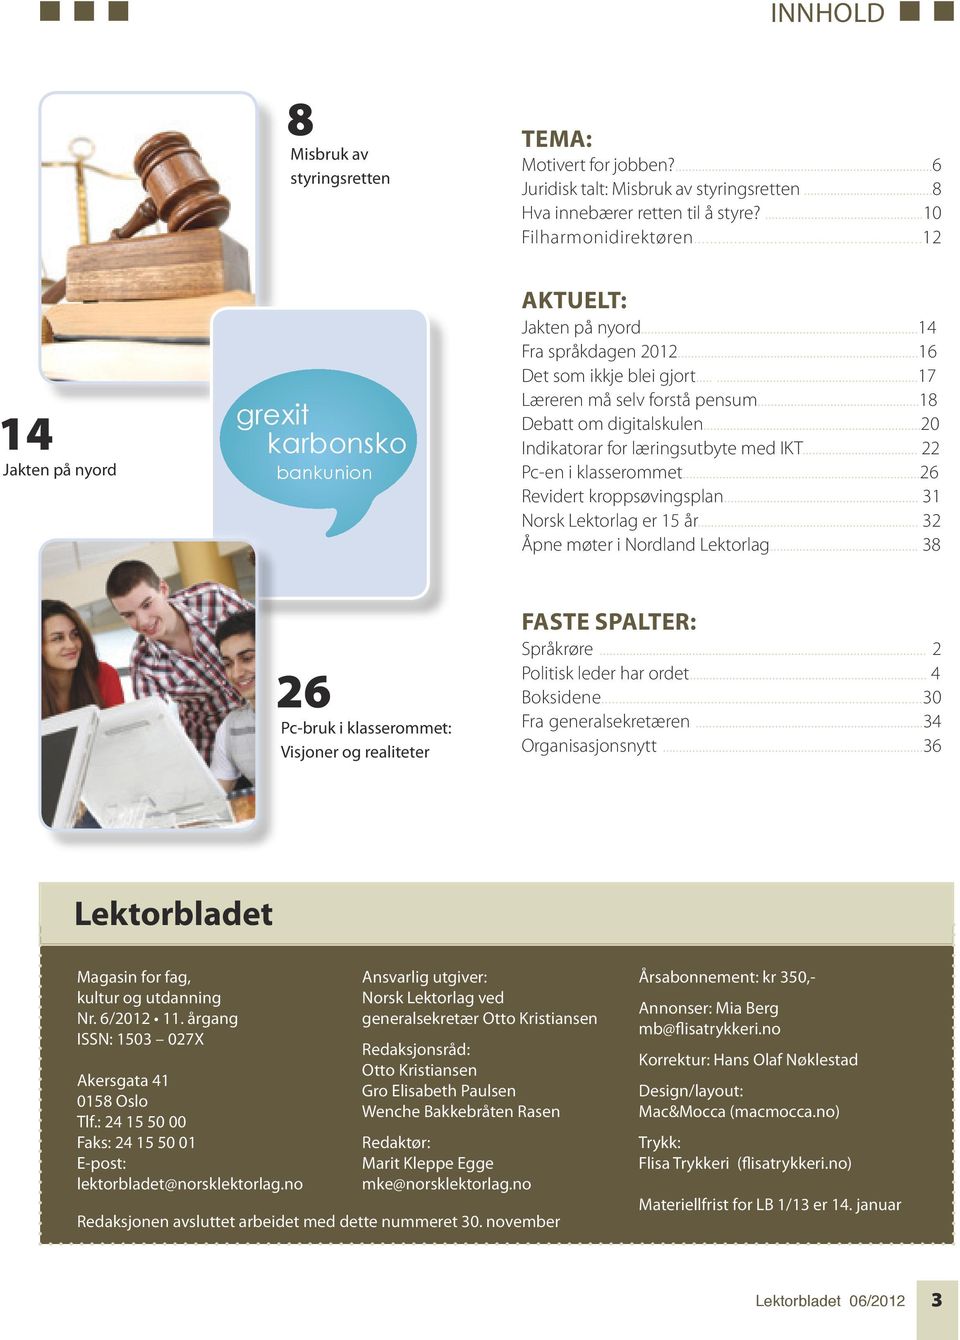 ..20 Indikatorar for læringsutbyte med IKT... 22 Pc-en i klasserommet...26 Revidert kroppsøvingsplan... 31 Norsk Lektorlag er 15 år... 32 Åpne møter i Nordland Lektorlag.